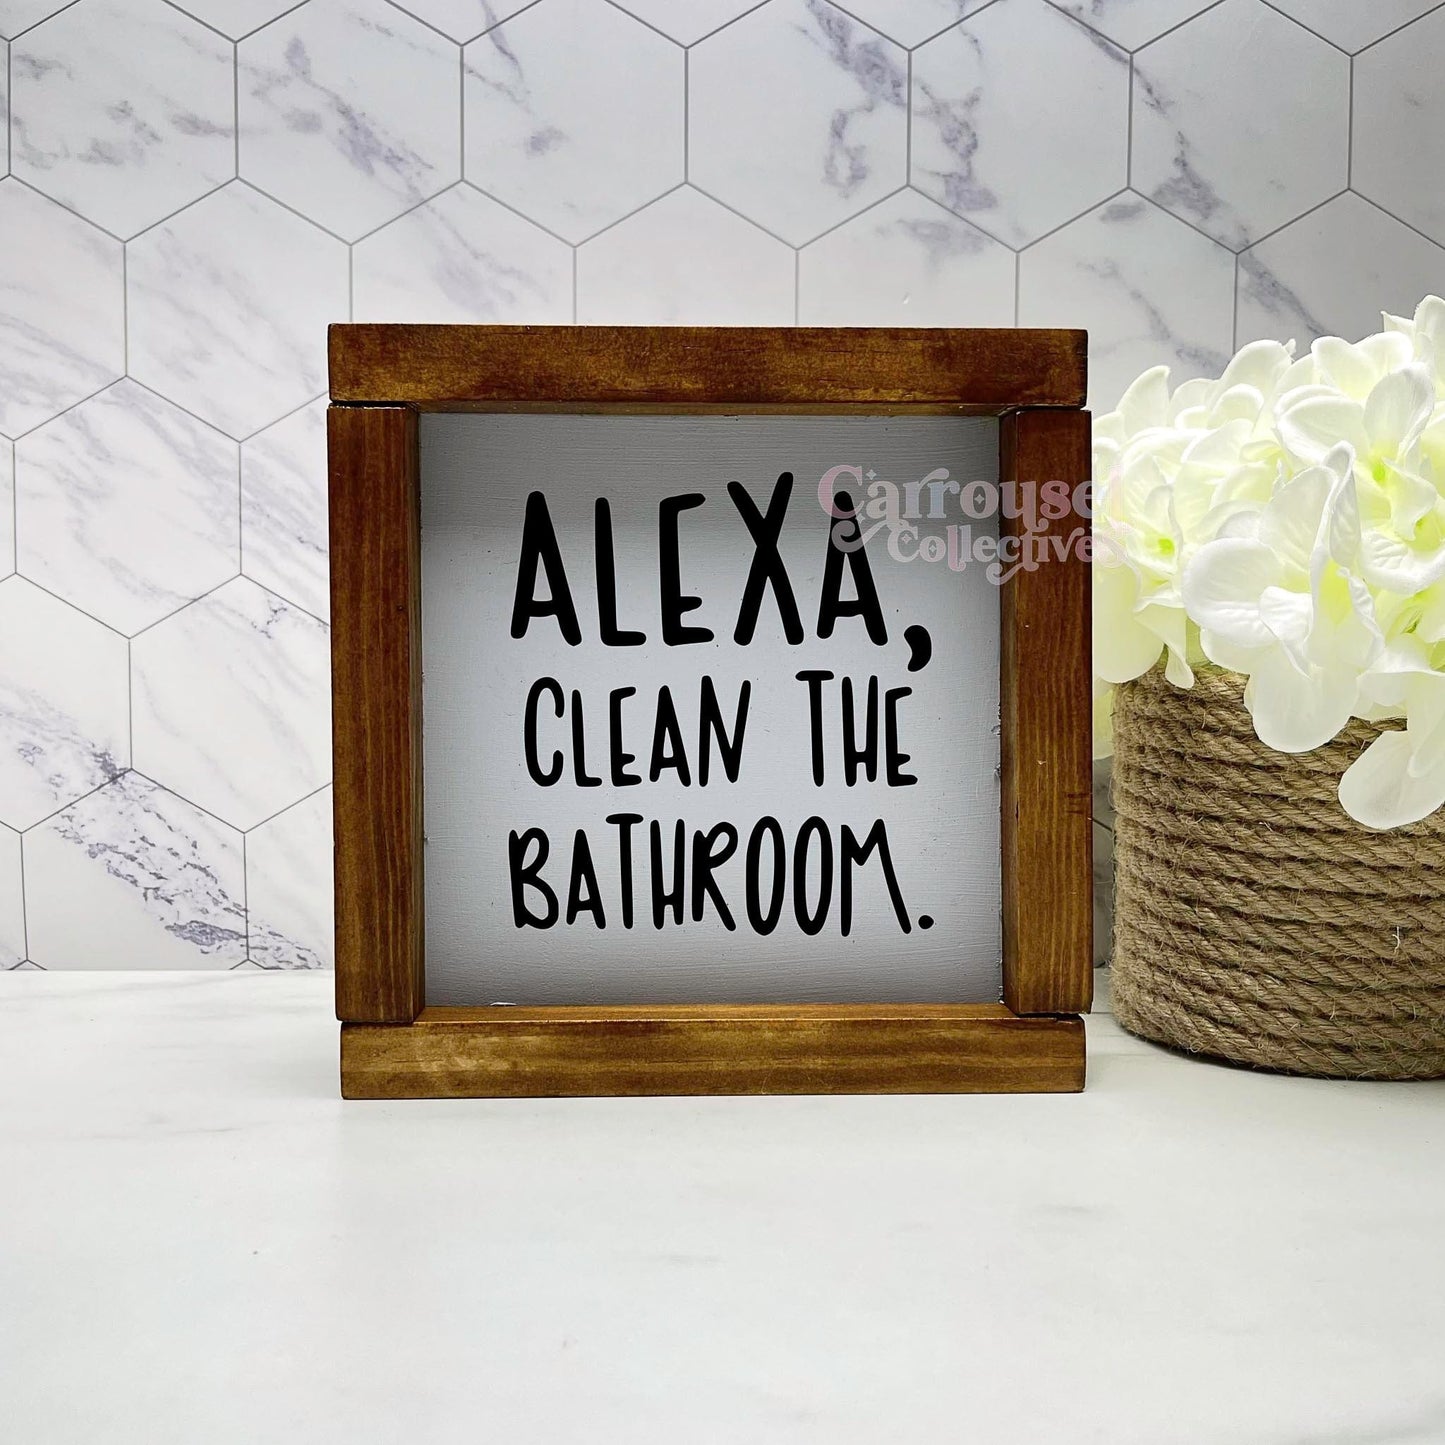 Alexa, clean the bathroom framed bathroom wood sign, bathroom decor, home decor